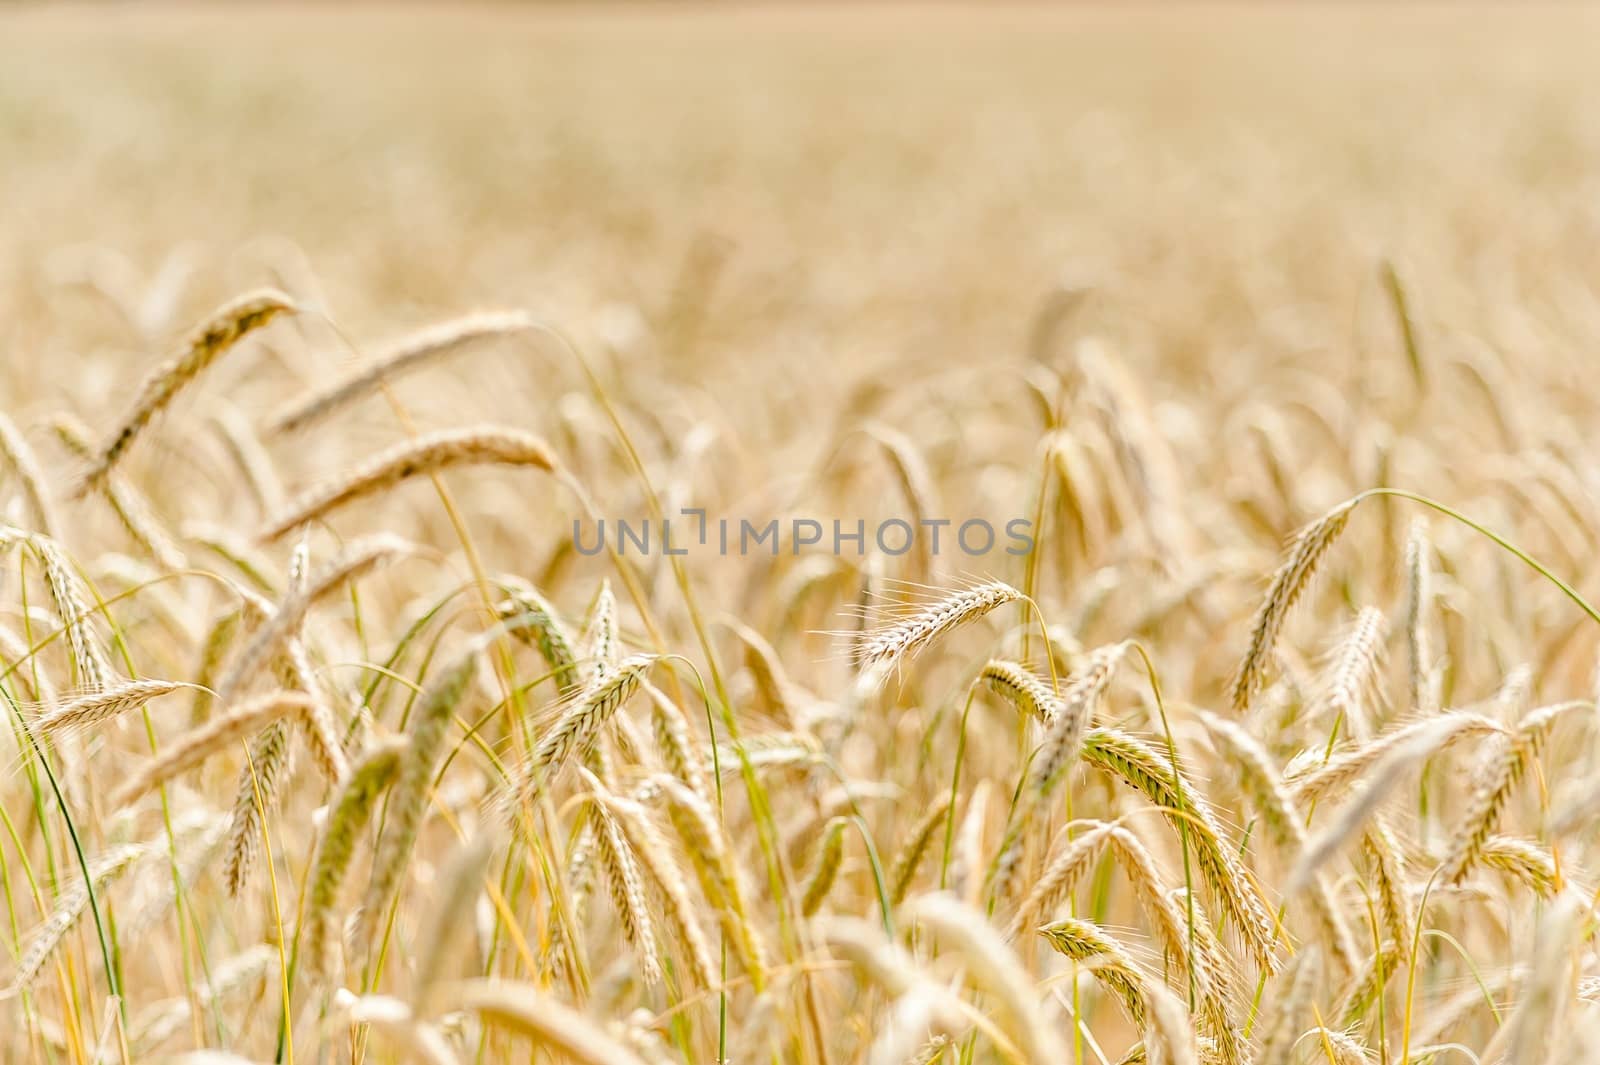 A cornfield of wheat in Denmark